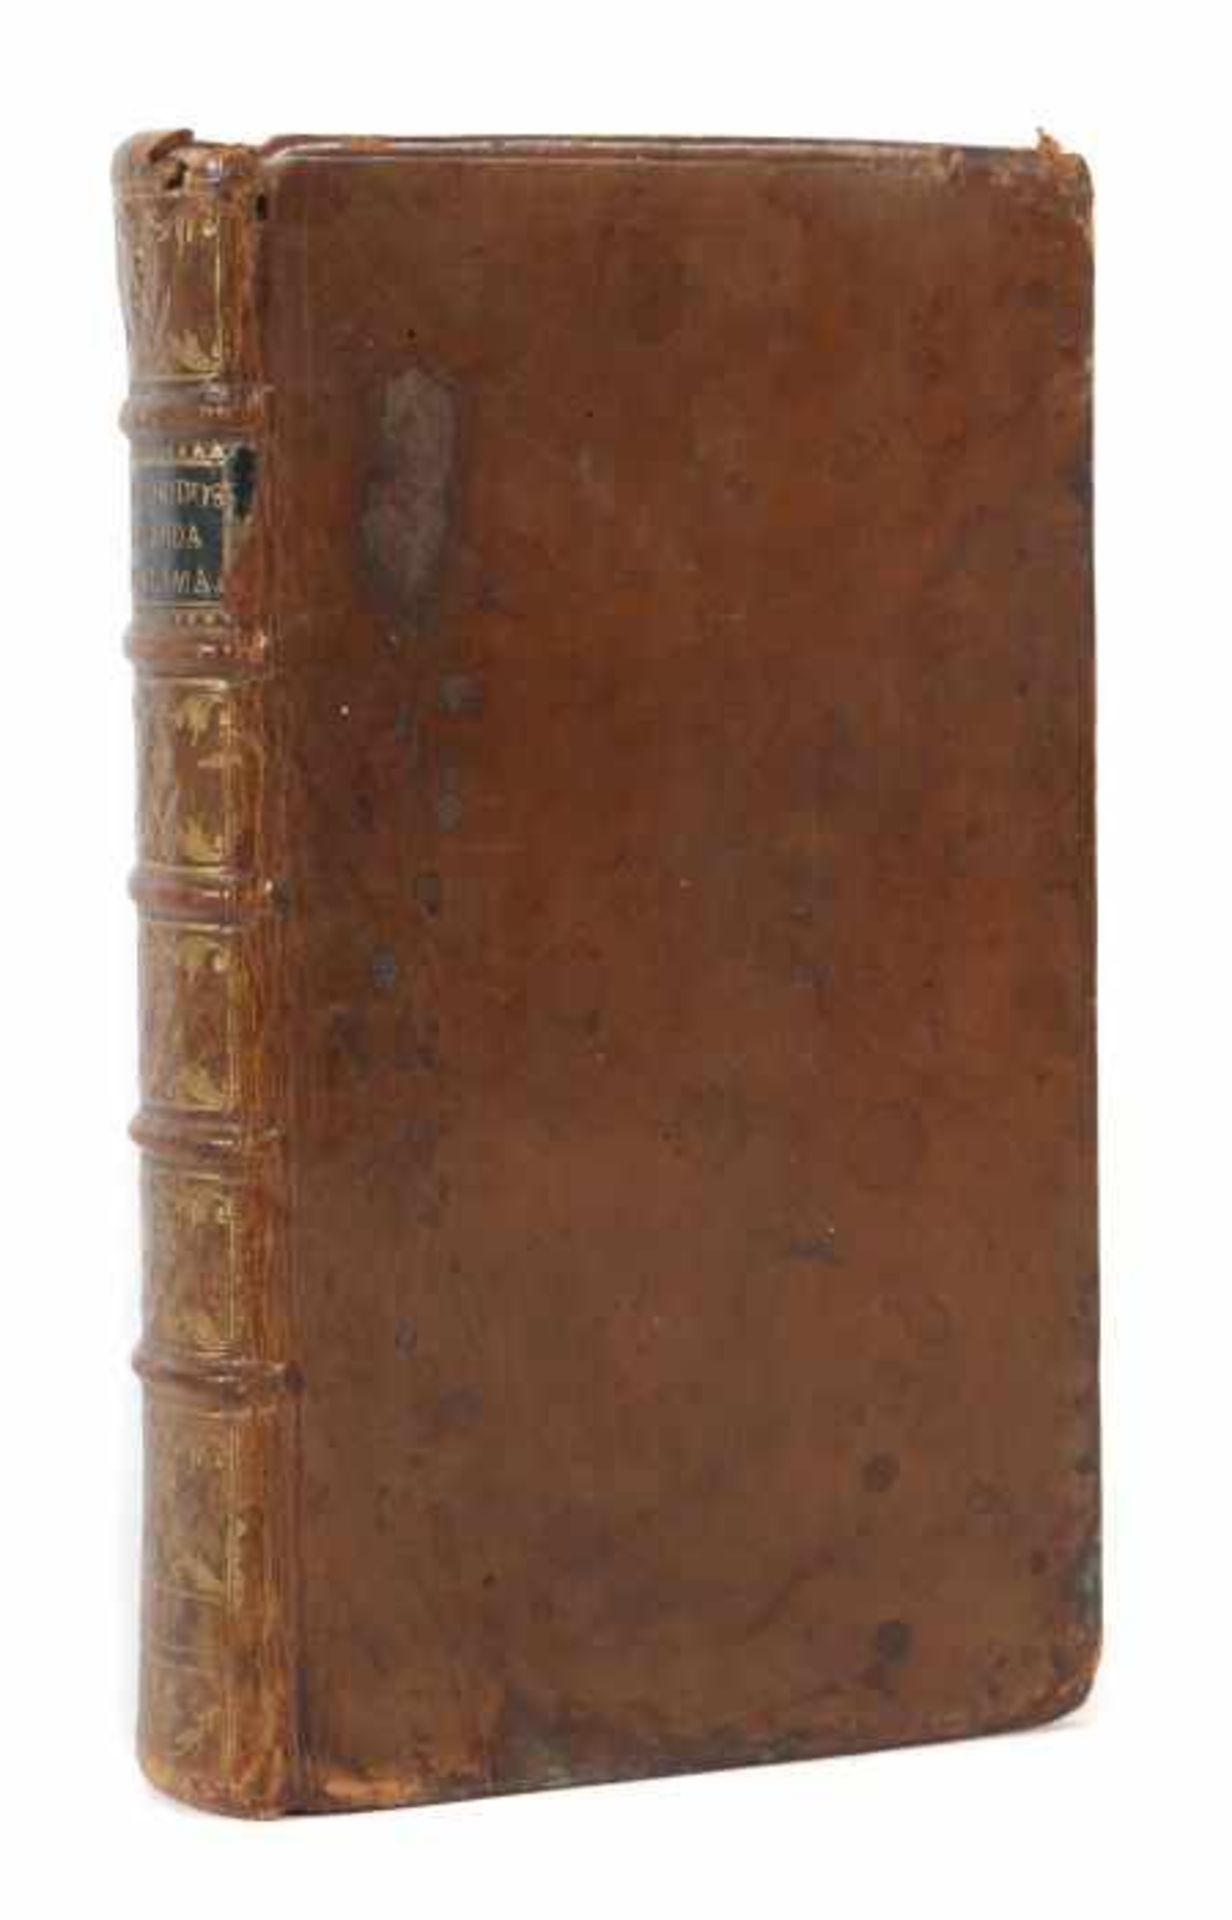 Quarin, Josephi Methodus medendarum inflammationum, Francofurti, Sumptibus Societatis, 1779,